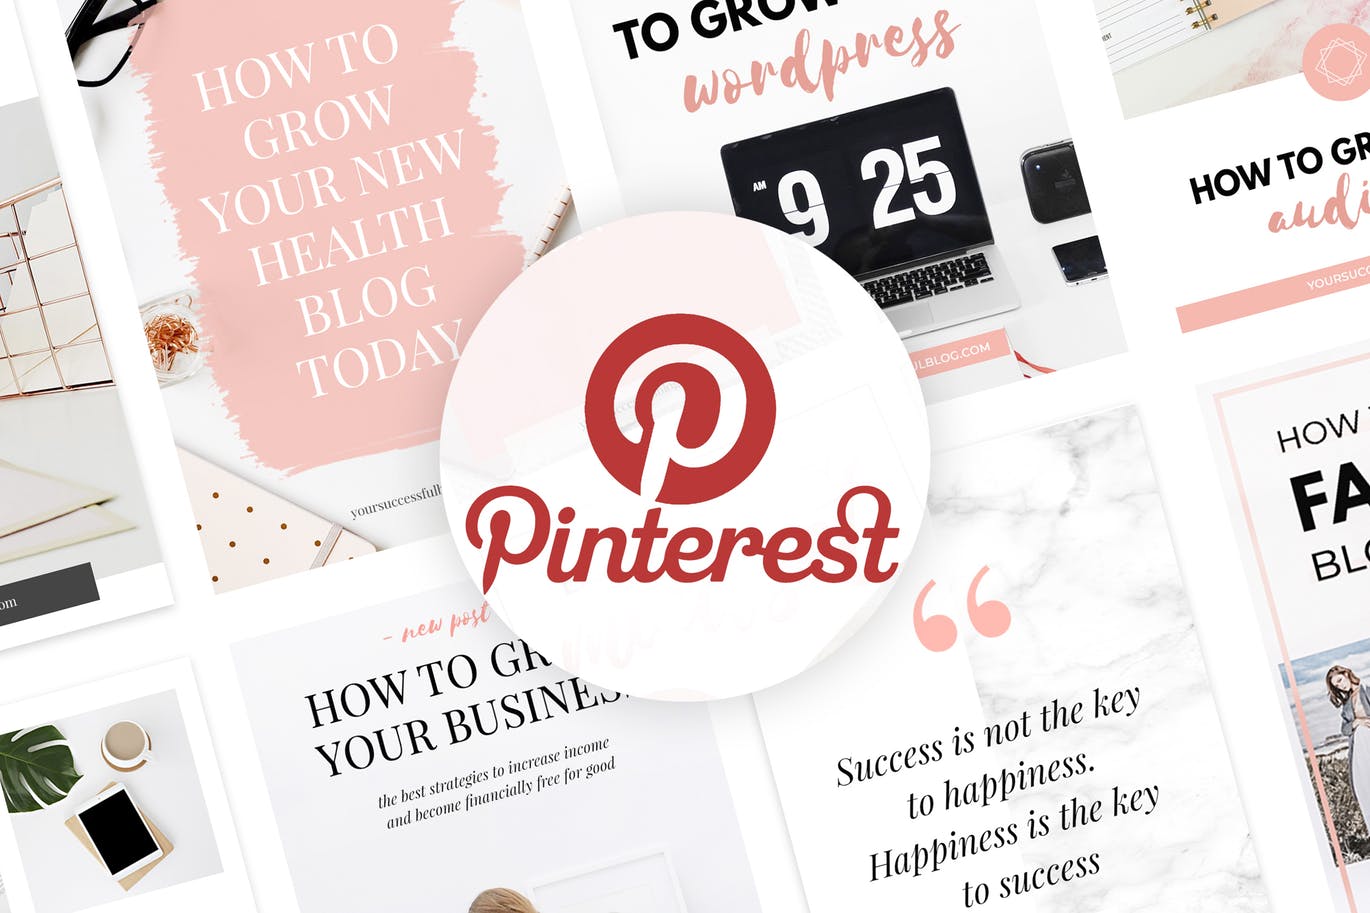 10款粉色主题Pinterest社交贴图广告设计模板素材库精选v2 Canva Pinterest Templates V.2插图(3)